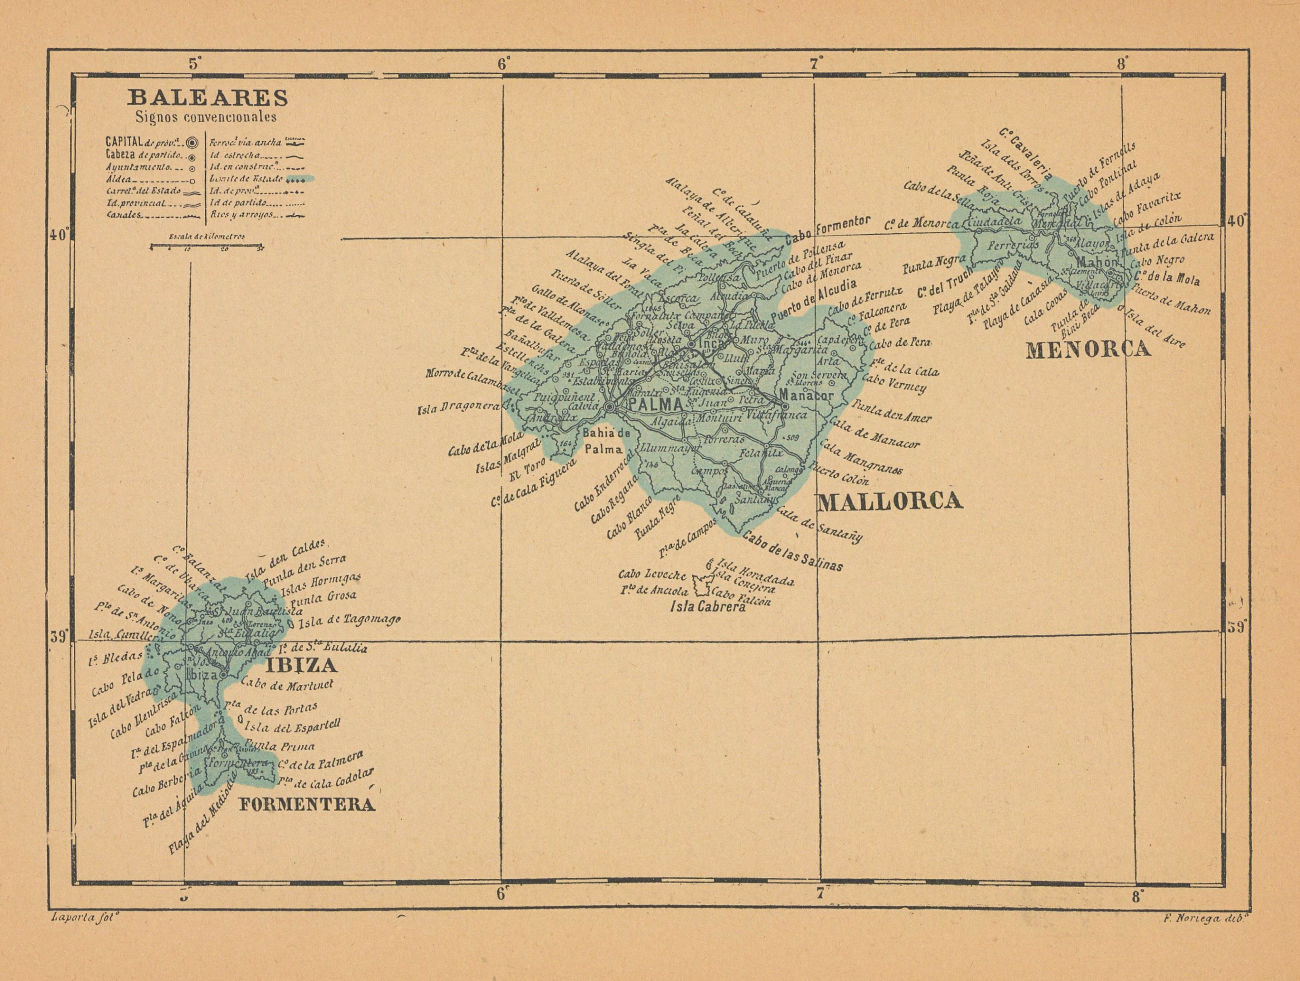 ISLAS BALEARES. ILLES BALEARS. Mallorca Ibiza Menorca. Balearic Islands 1914 map